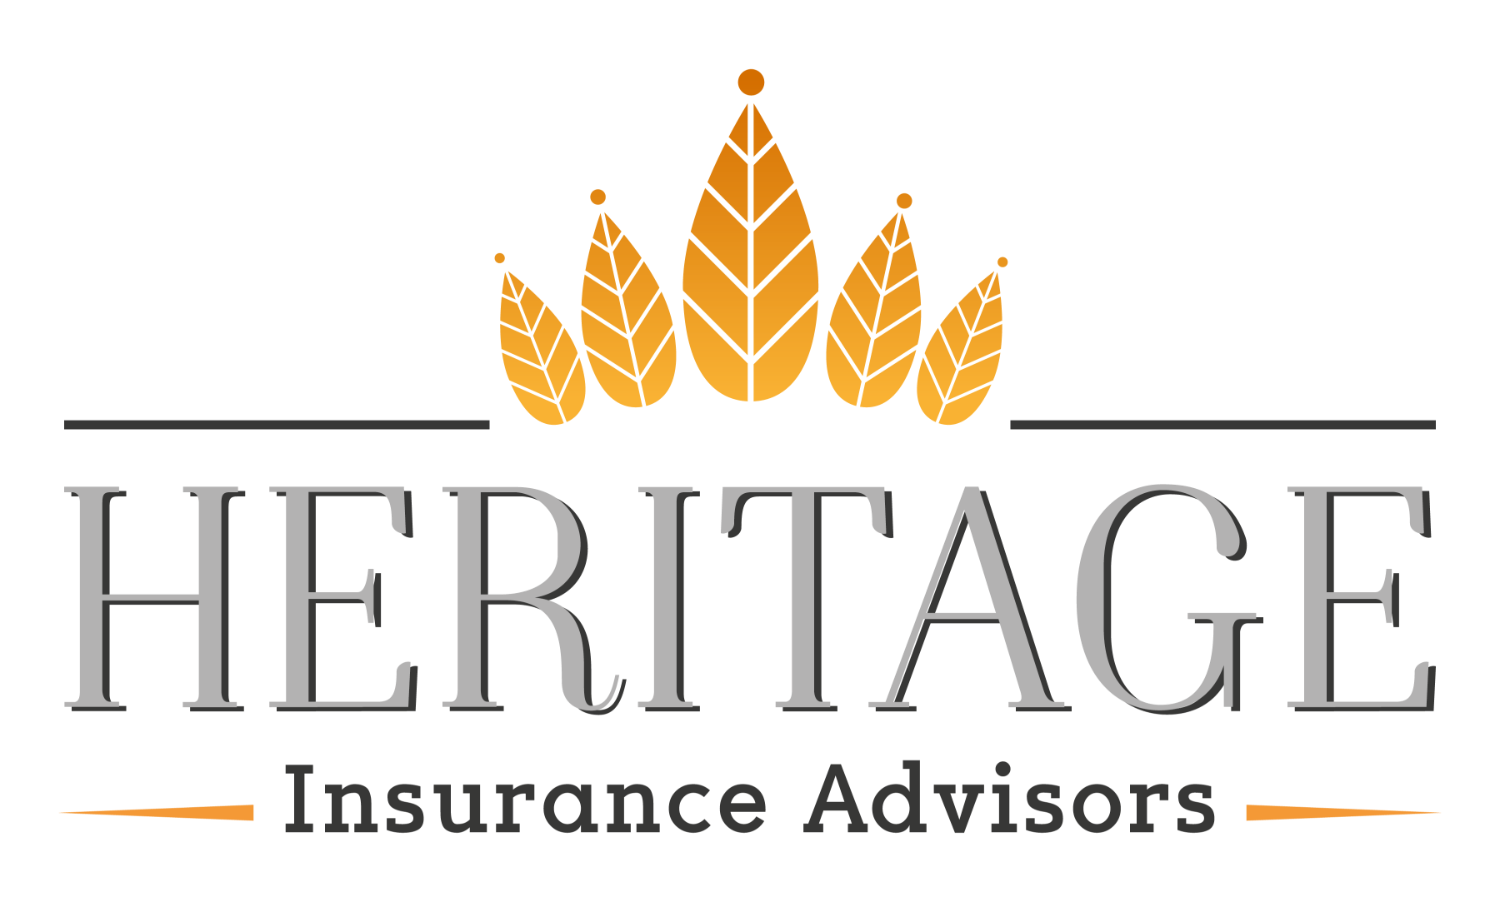 Heritage Insurance Advisors logo